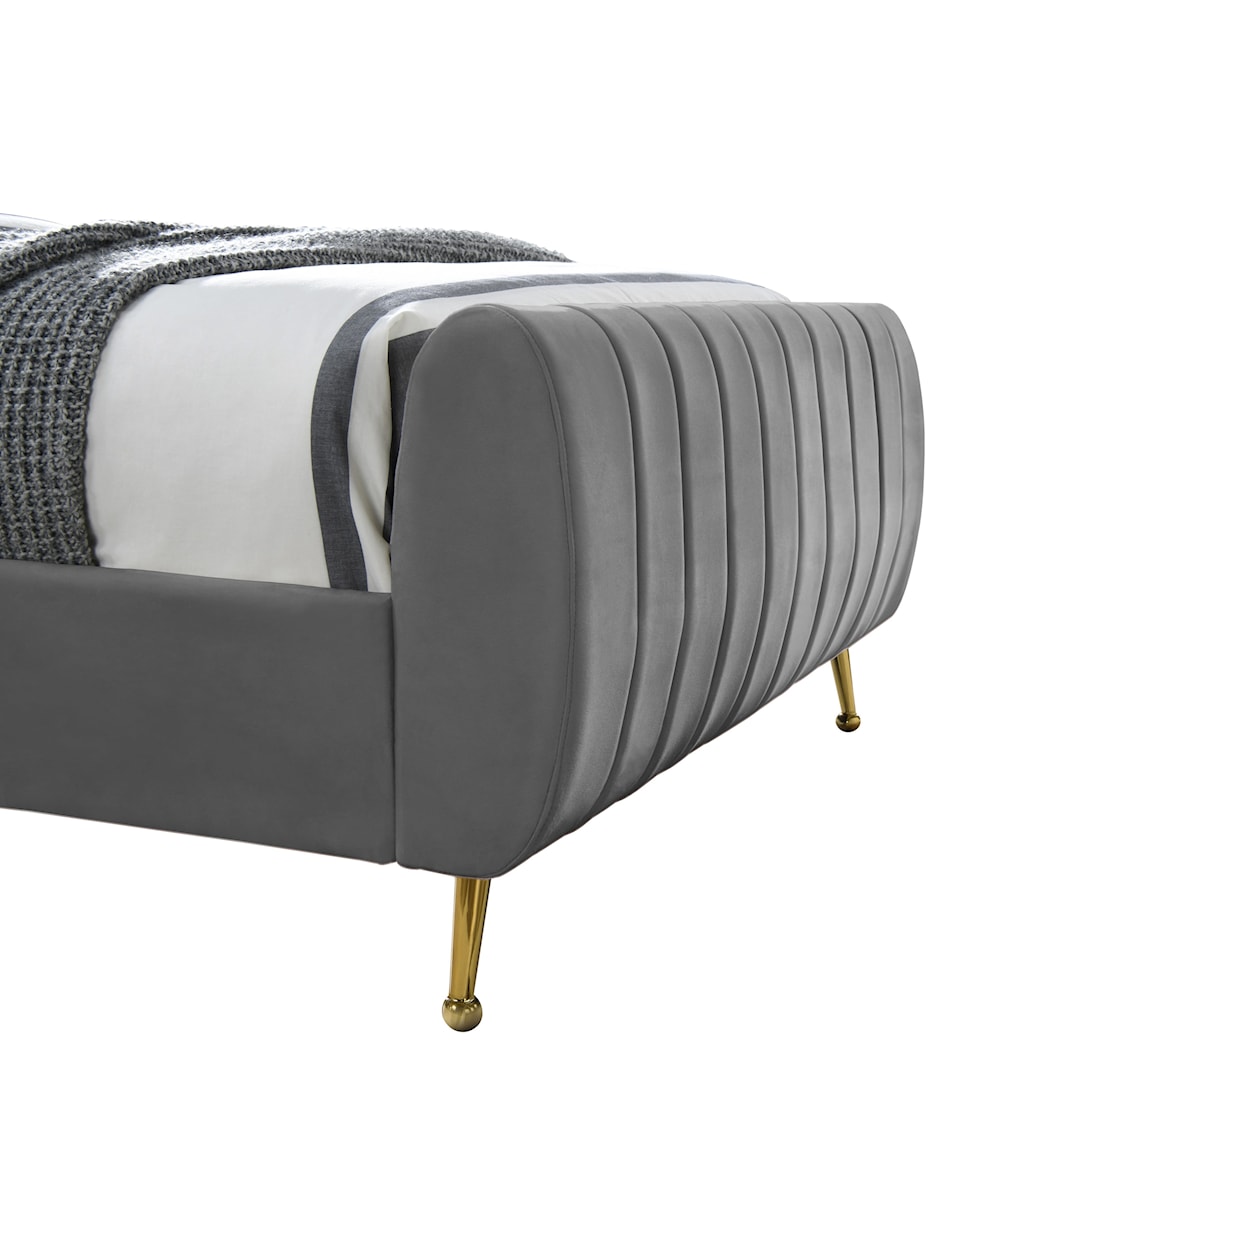 Meridian Furniture Zara Twin Bed